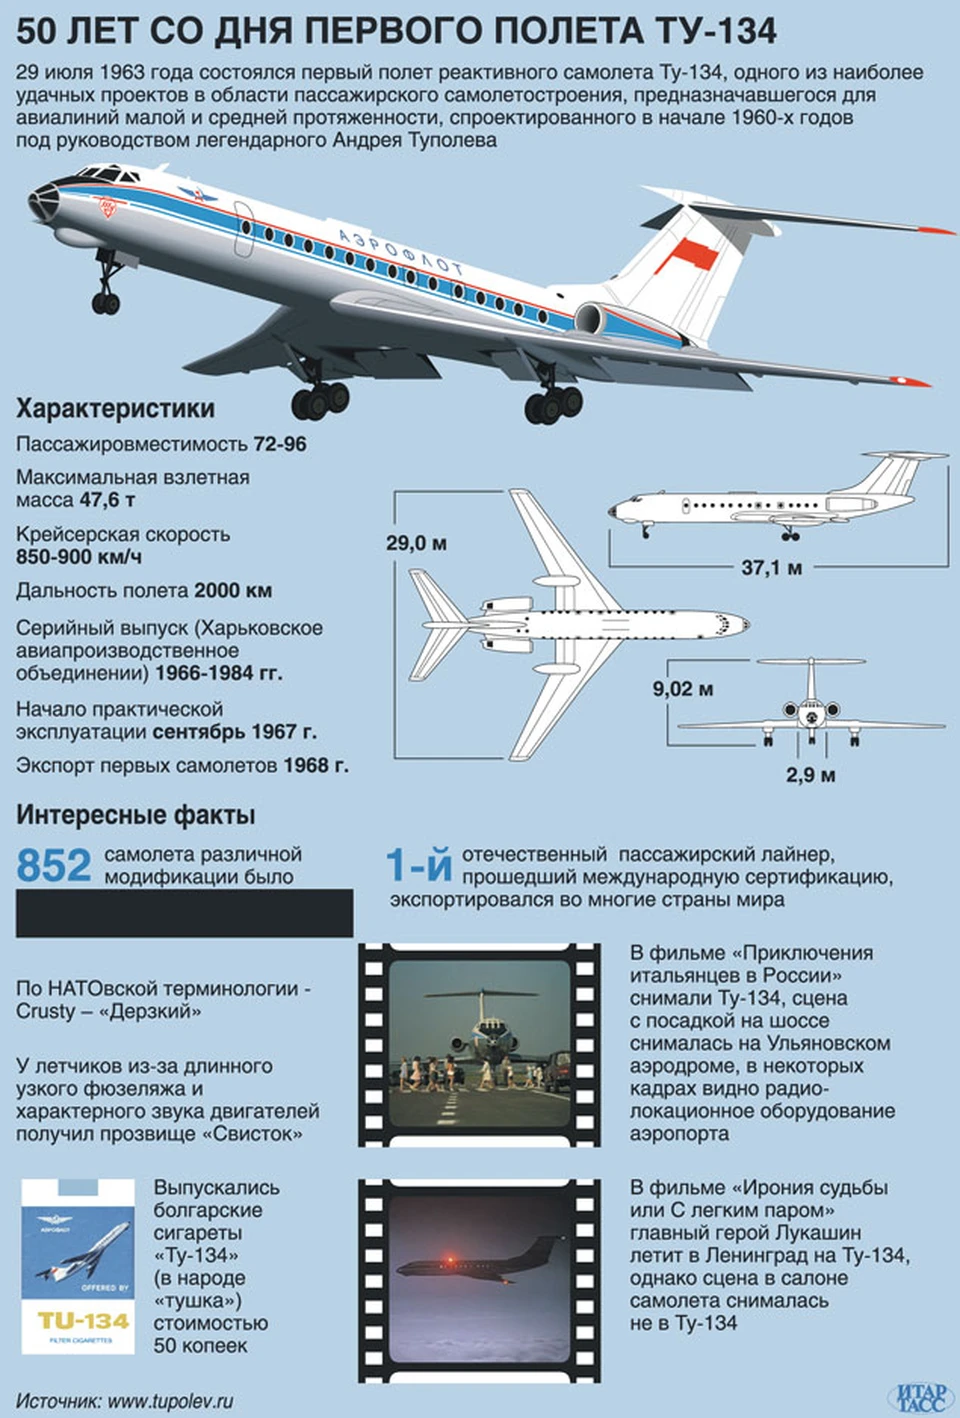 Скорость самолета ту 134. ТТХ ту 134 самолет. Самолет ту 134 технические характеристики. 29 Июля 1963 года состоялся первый полет самолета ту-134. Техническое описание ту 134.